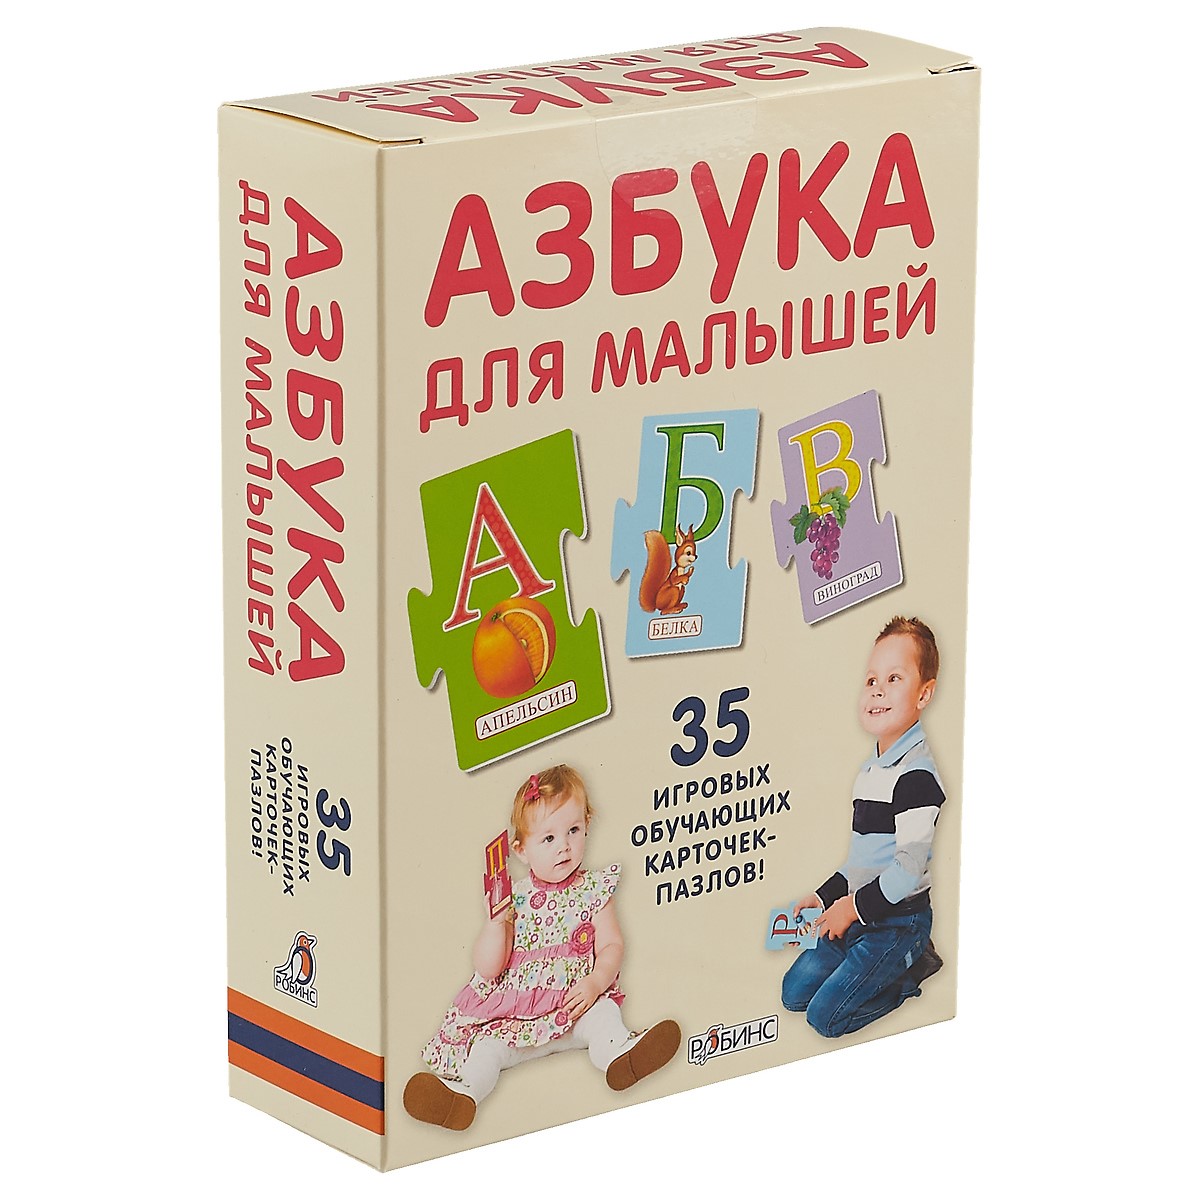 Пазлы. Азбука для малышей набор карточек робинс пазлы азбука для малышей 35 шт